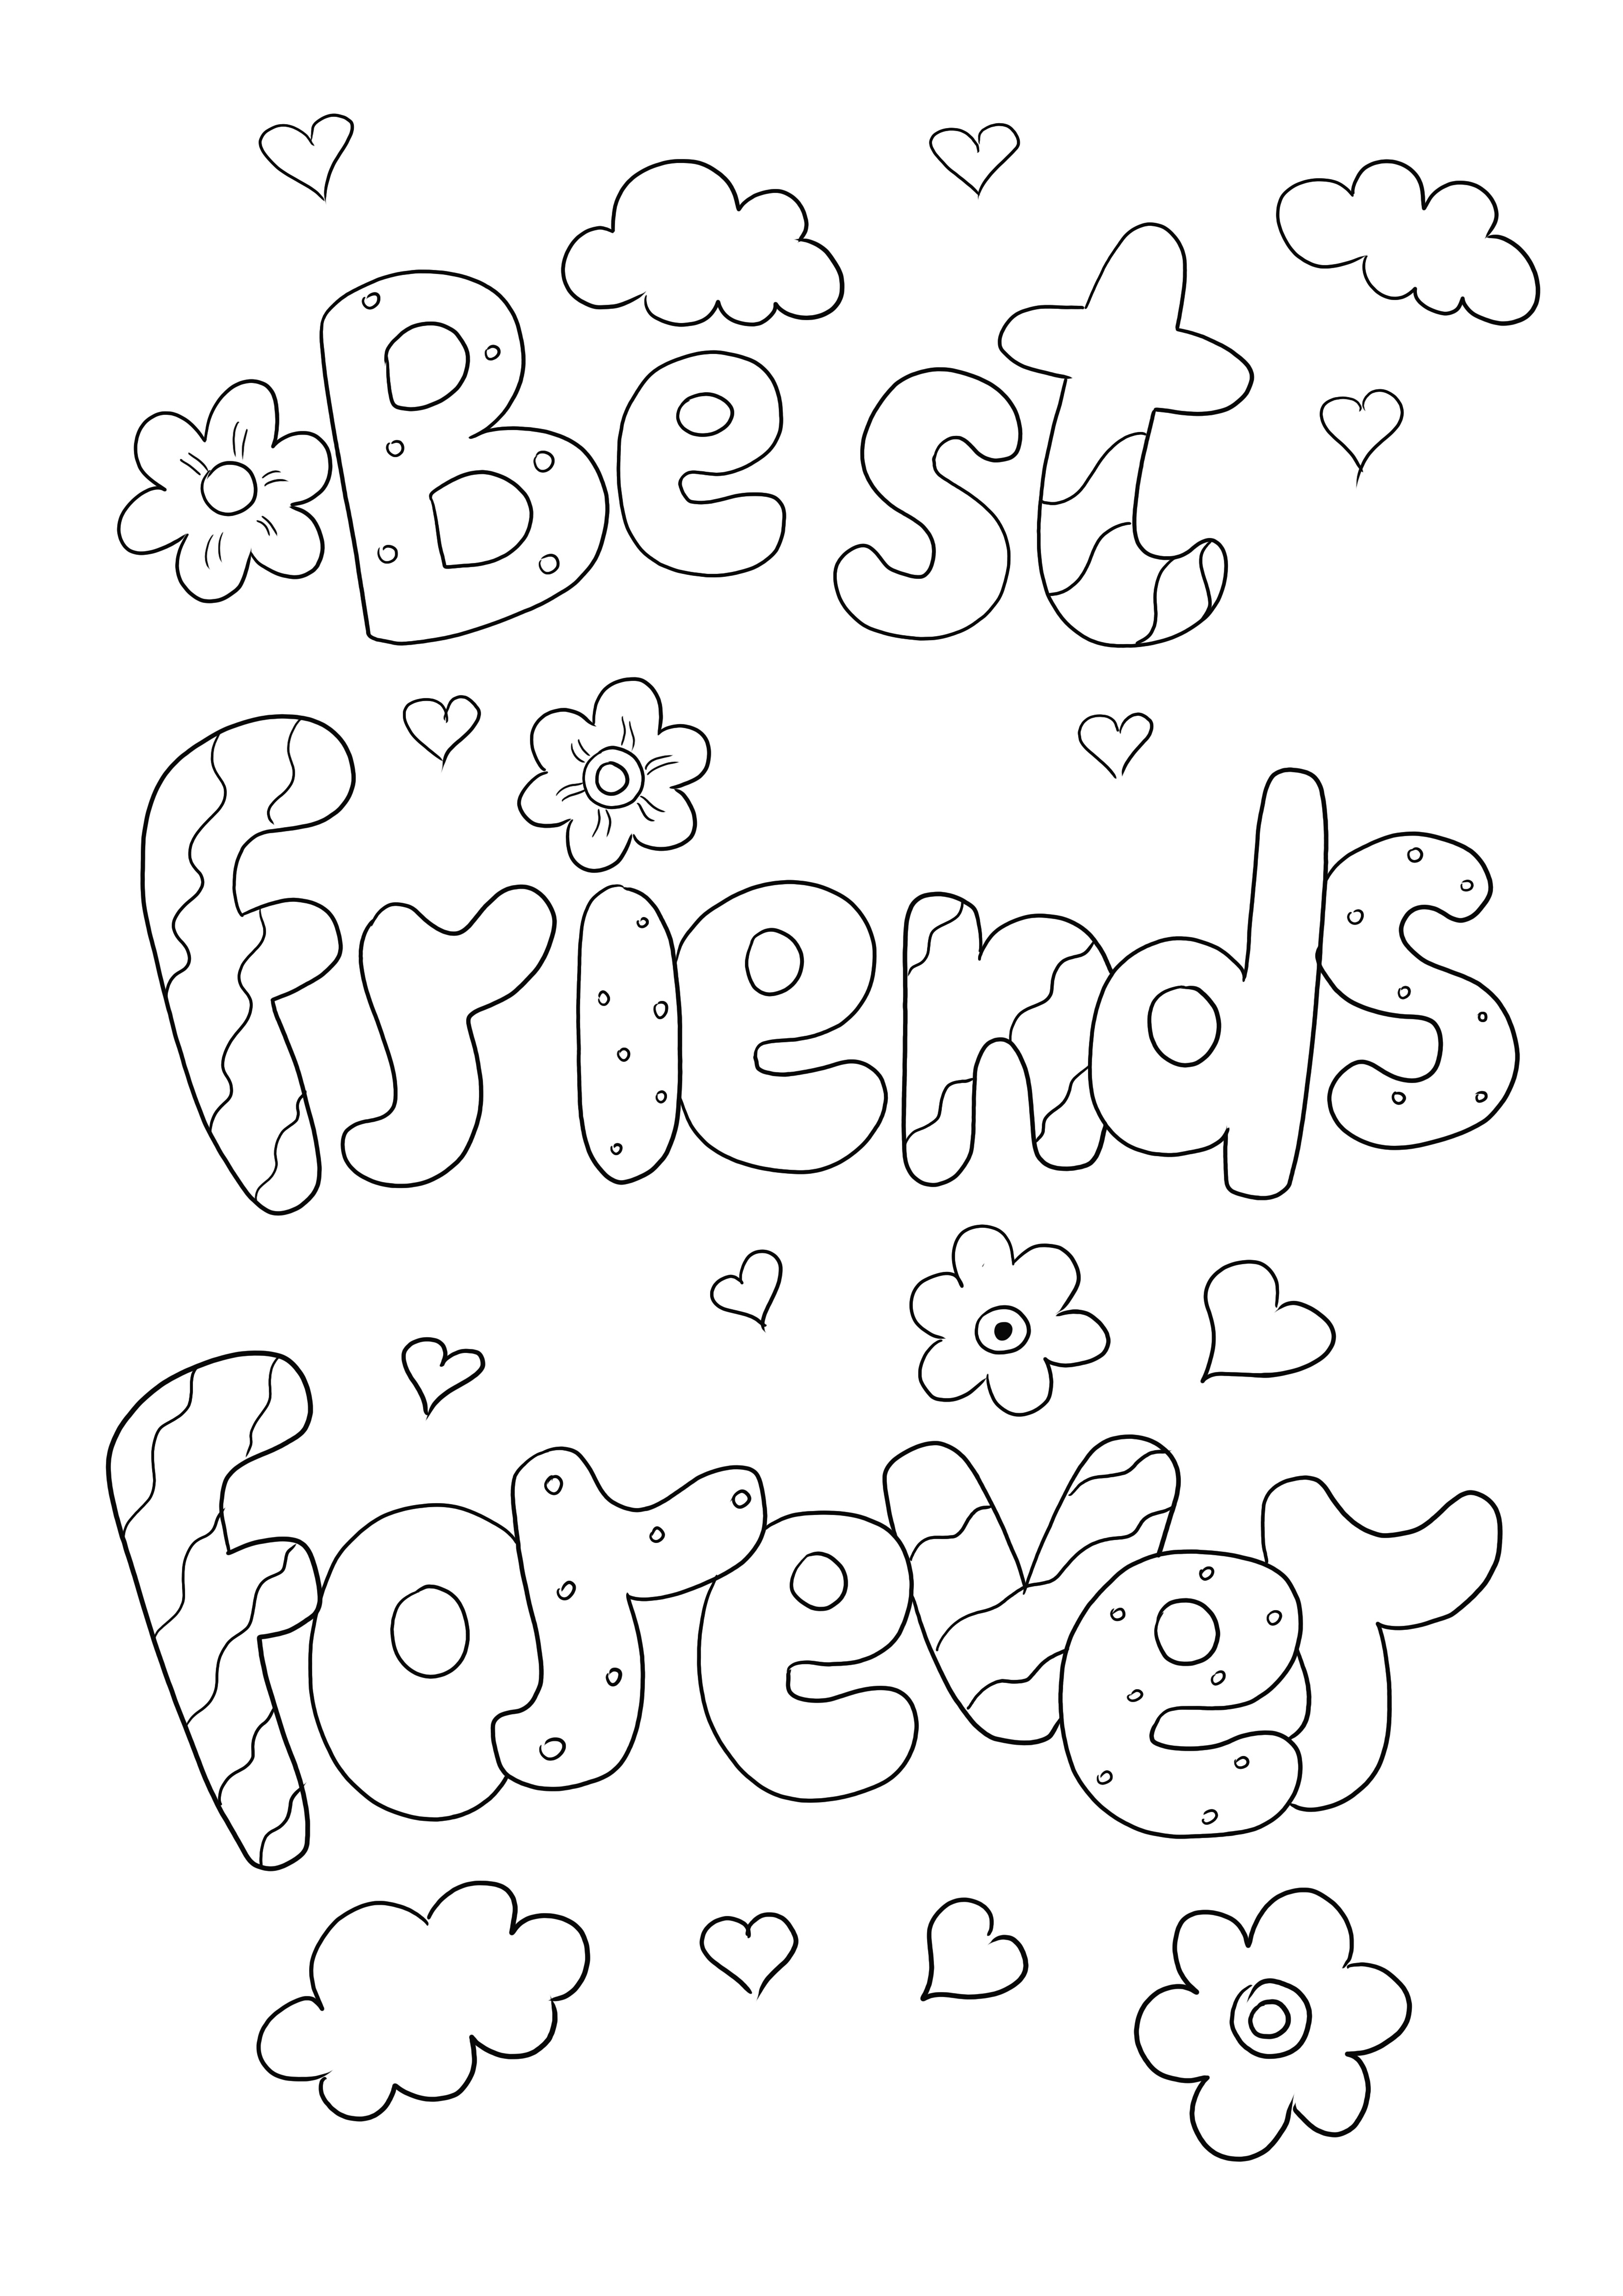 Best Friends Forever mewarnai gambar gratis untuk diunduh atau dicetak langsung